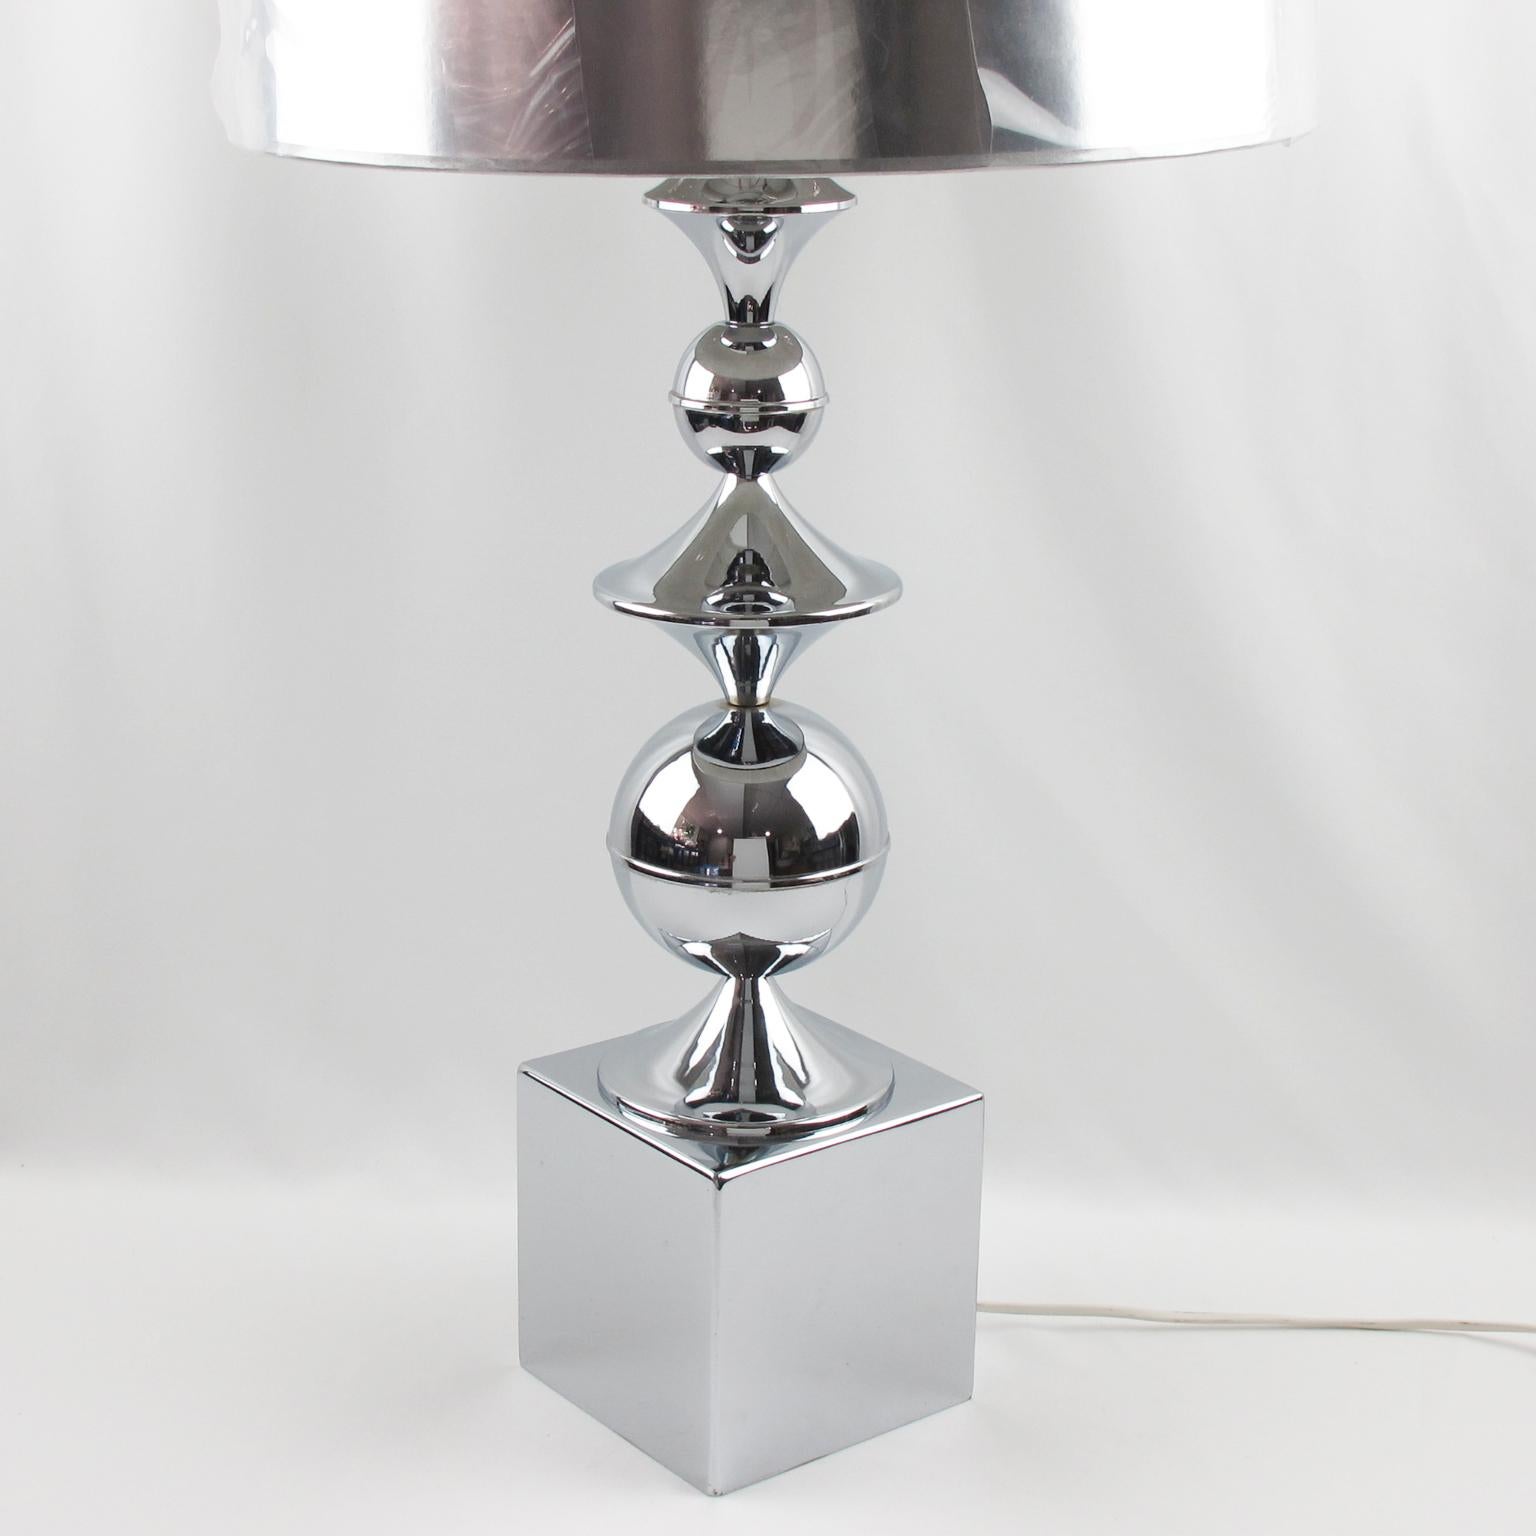 Philippe Barbier a conçu cette élégante lampe de table moderniste de l'ère spatiale pour la Maison Barbier Paris dans les années 1970. La forme géométrique haute comporte des éléments en métal chromé poli. L'article est conforme aux normes